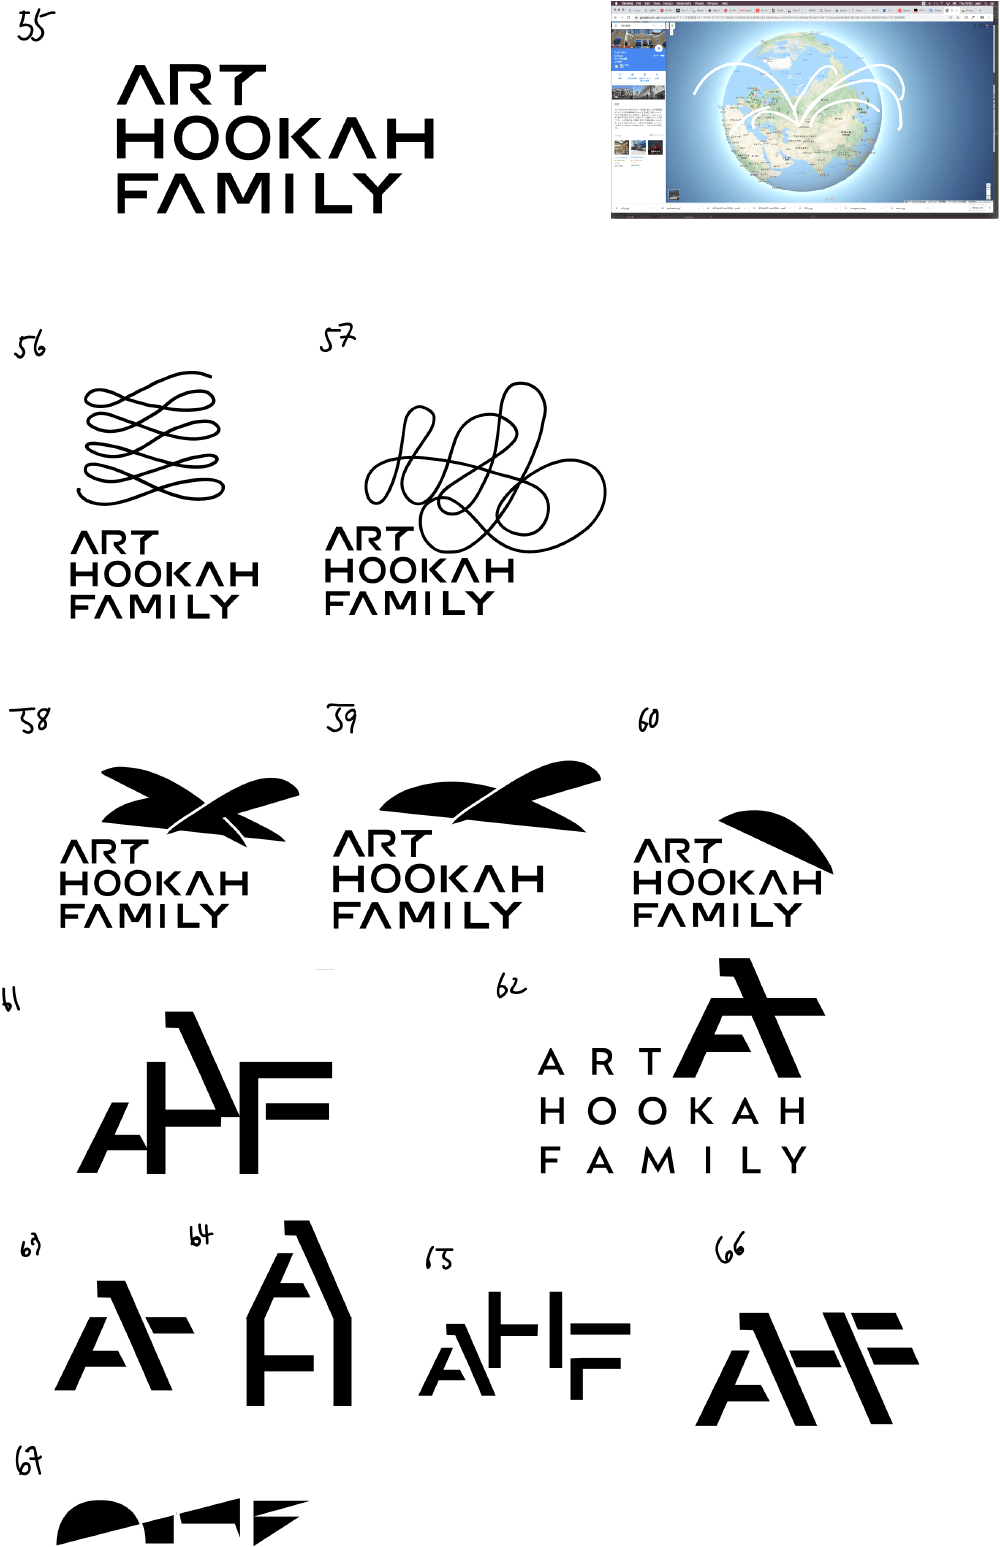 art hookah family process 05